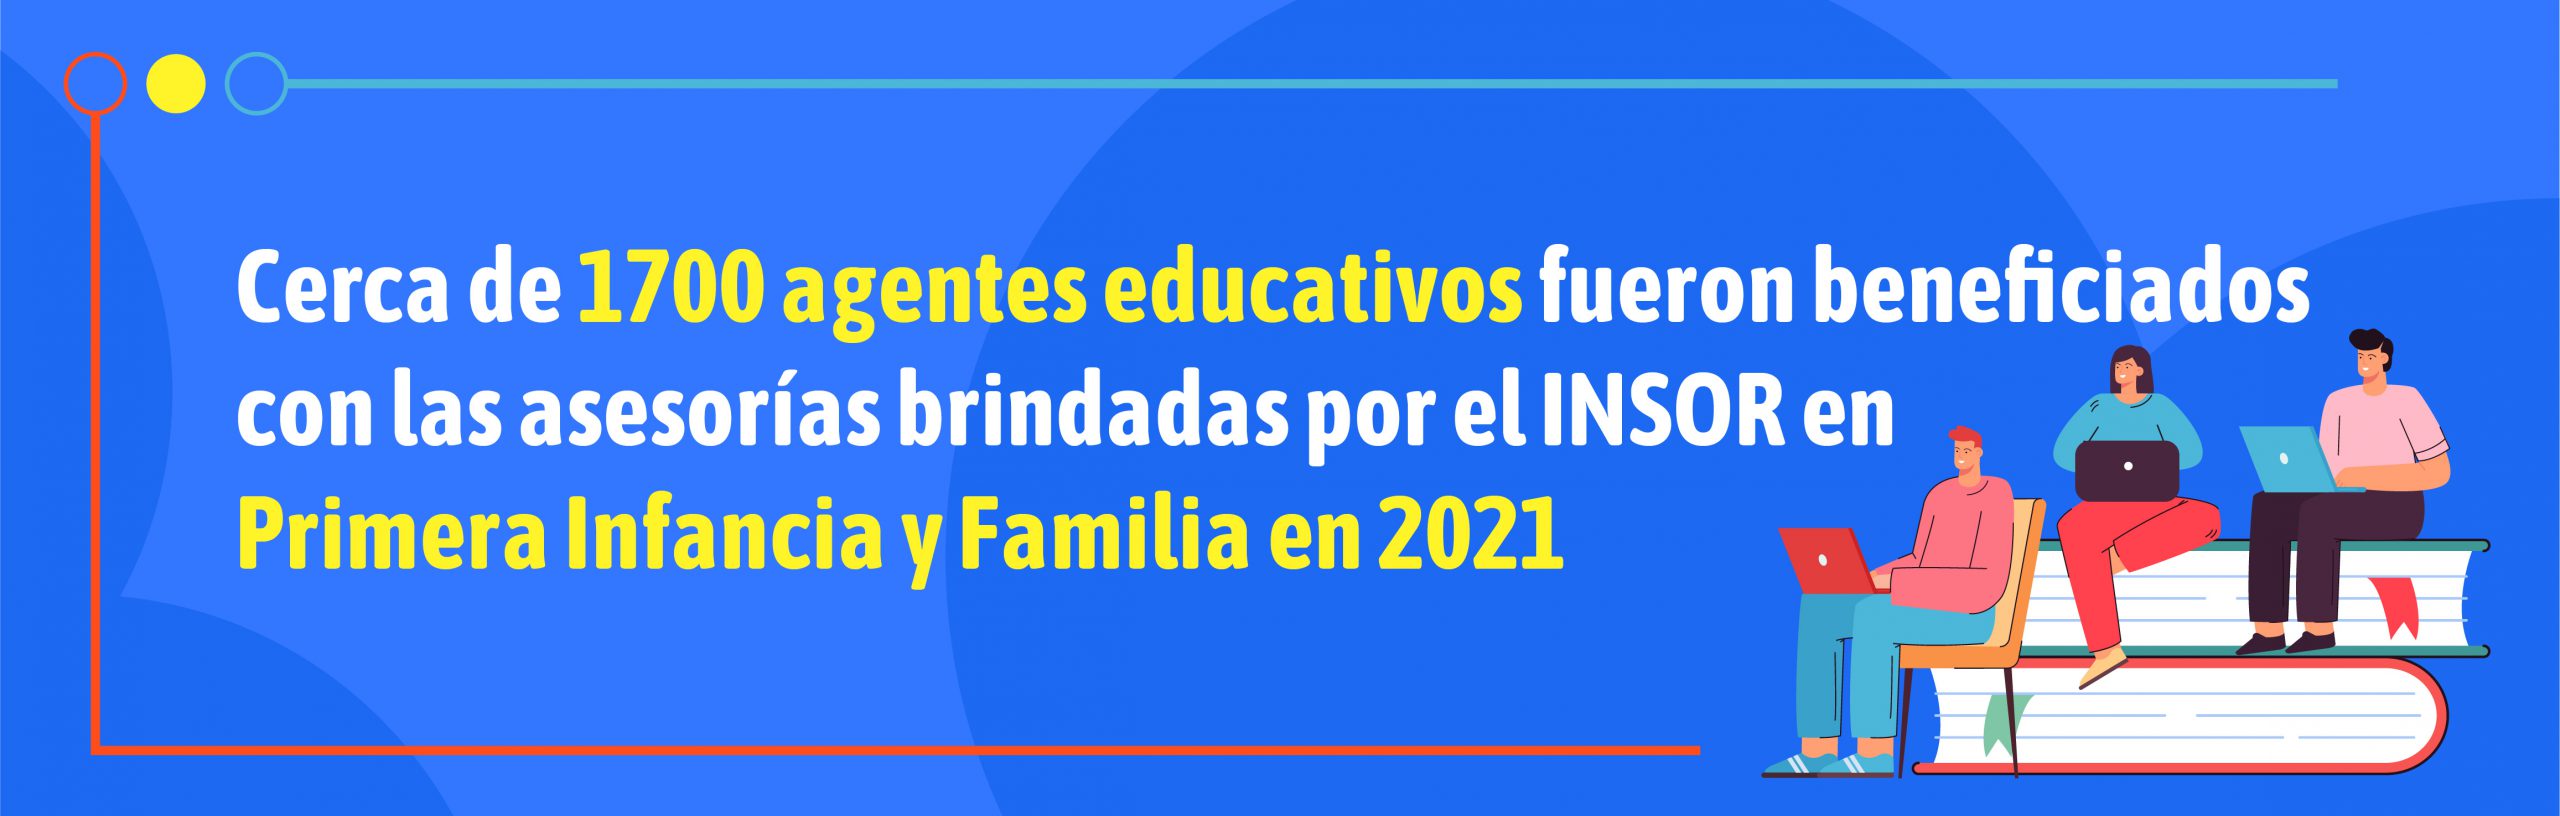 Banner Cerca de 1700 agentes educativos fueron beneficiados con las asesorías en Primera Infancia y Familia en 2021